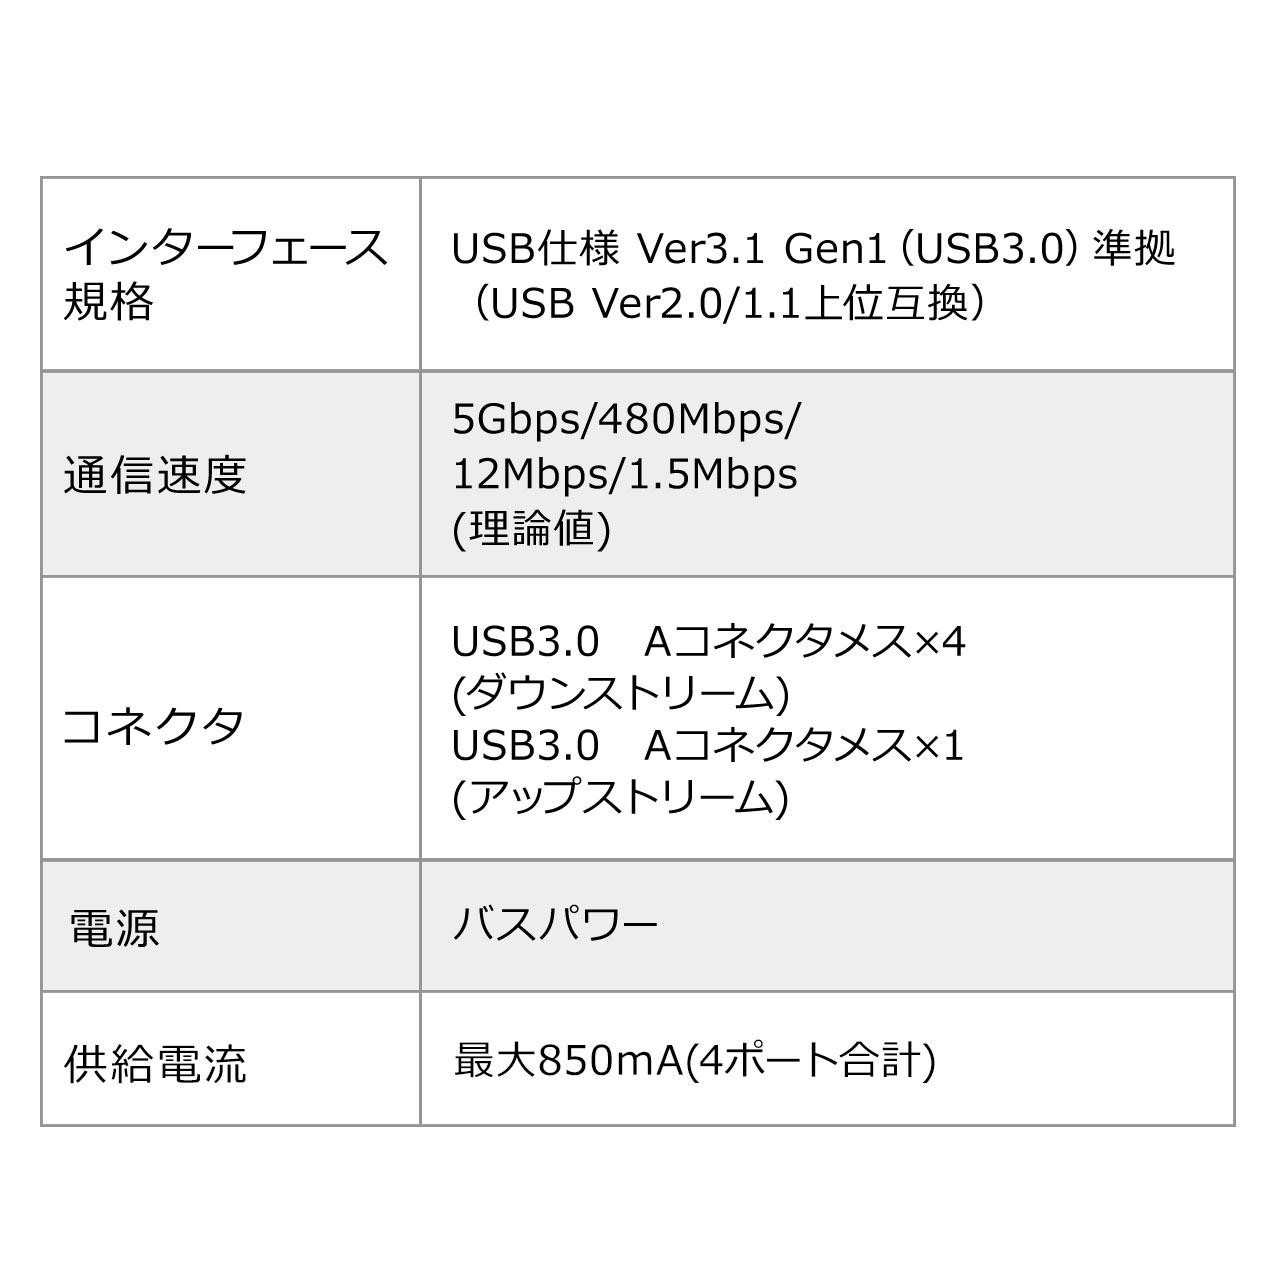 NvUSBnu USB3.2 Gen1 4|[g oXp[ P[u1.5m ubN 400-HUB065BK